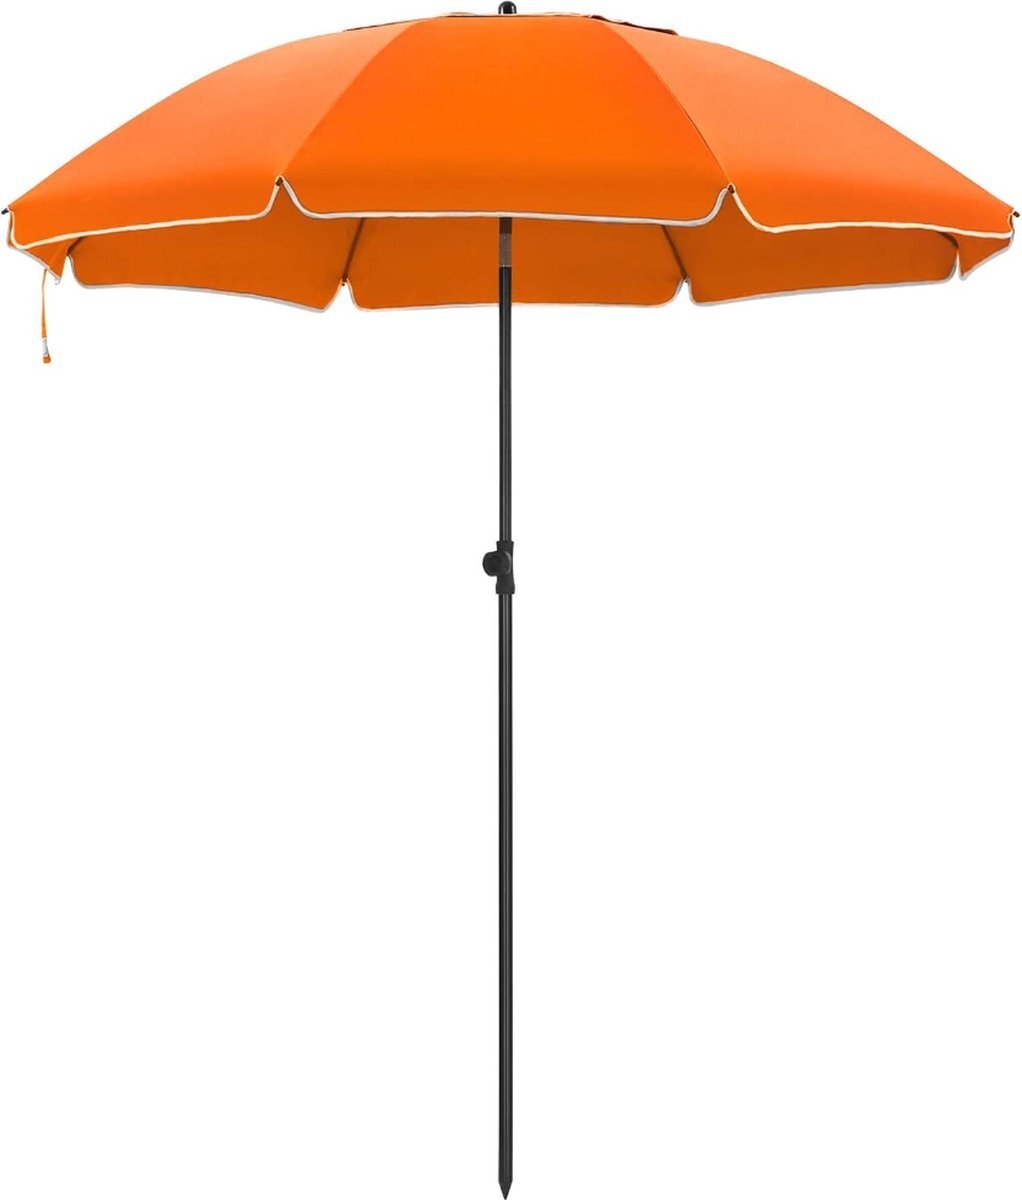 Acaza Parasol 180 cm diameter, rond / achthoekige strandparasol, knikbaar, kantelbaar, met draagtas - oranje